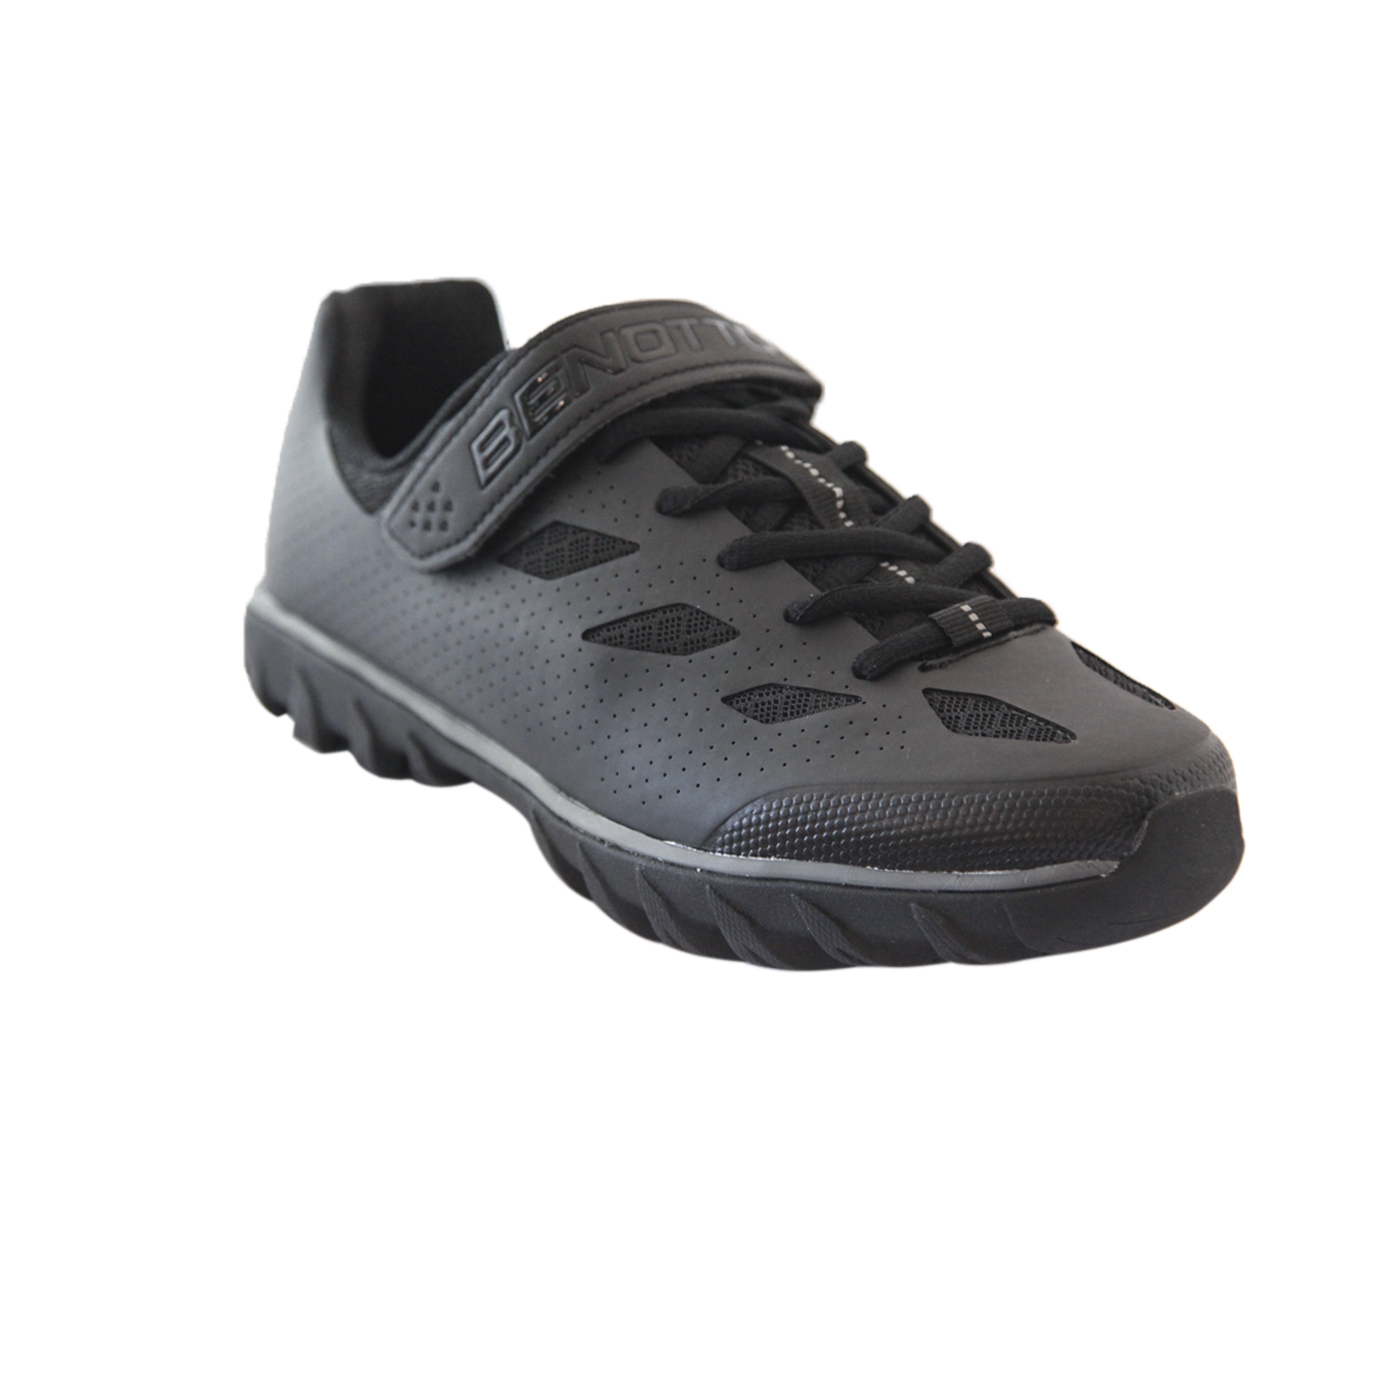 Zapato BENOTTO Montaña-Spinning con agujeta Med:44.0/28.3 Negro